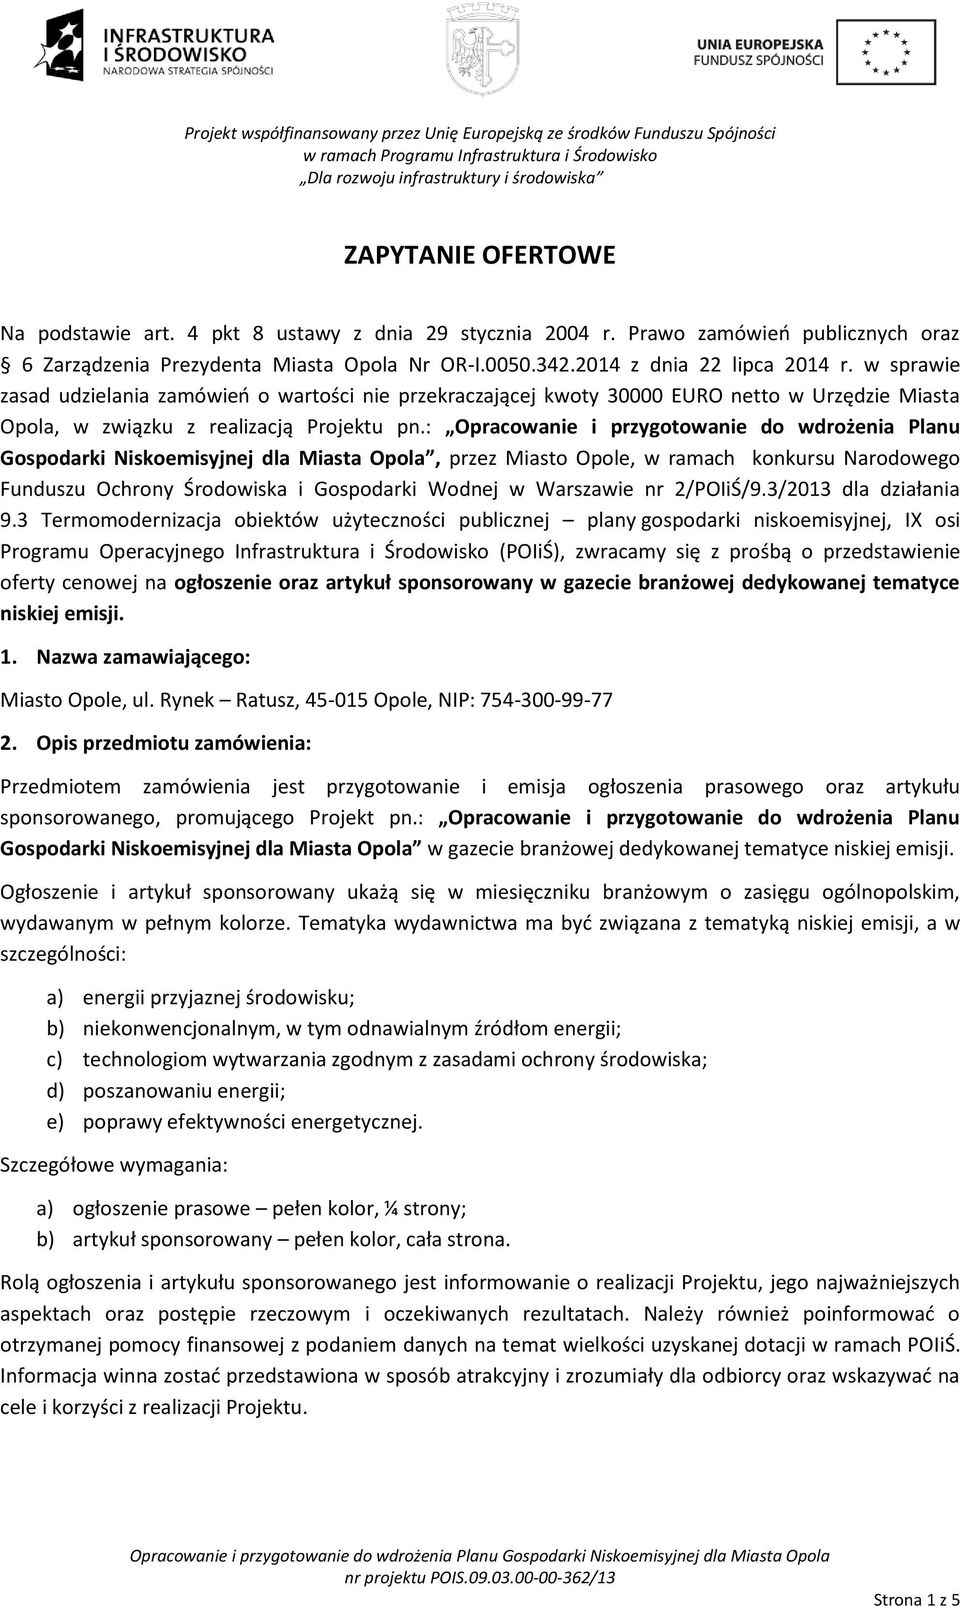 w sprawie zasad udzielania zamówień o wartości nie przekraczającej kwoty 30000 EURO netto w Urzędzie Miasta Opola, w związku z realizacją Projektu pn.